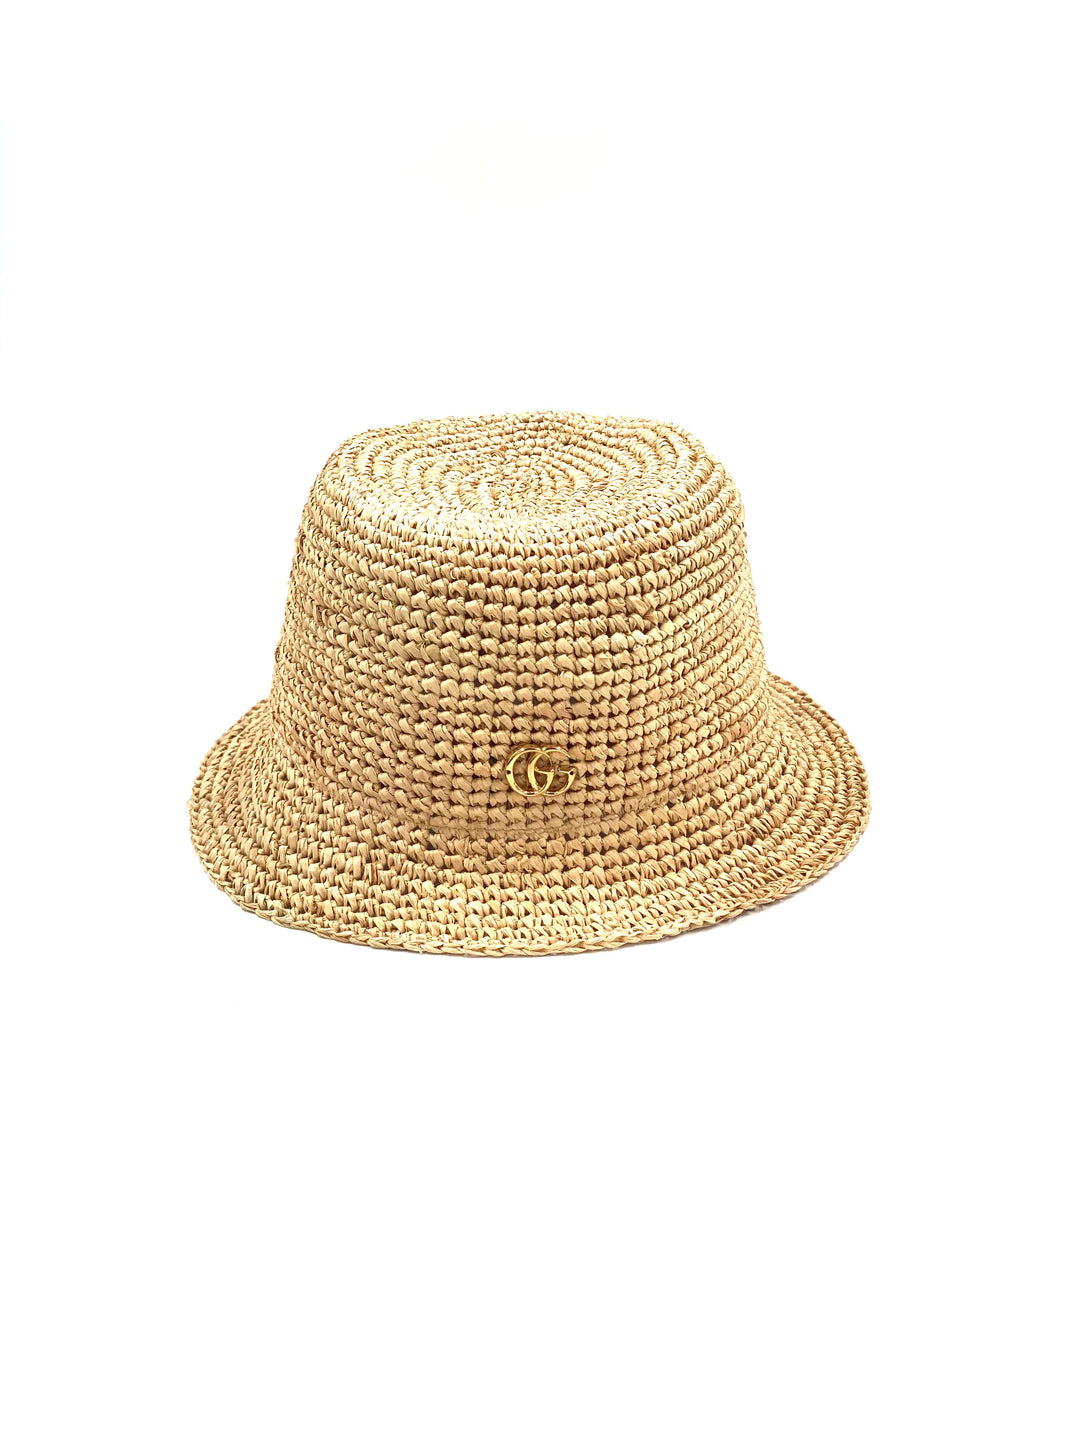 Gucci Straw Raffia Hat